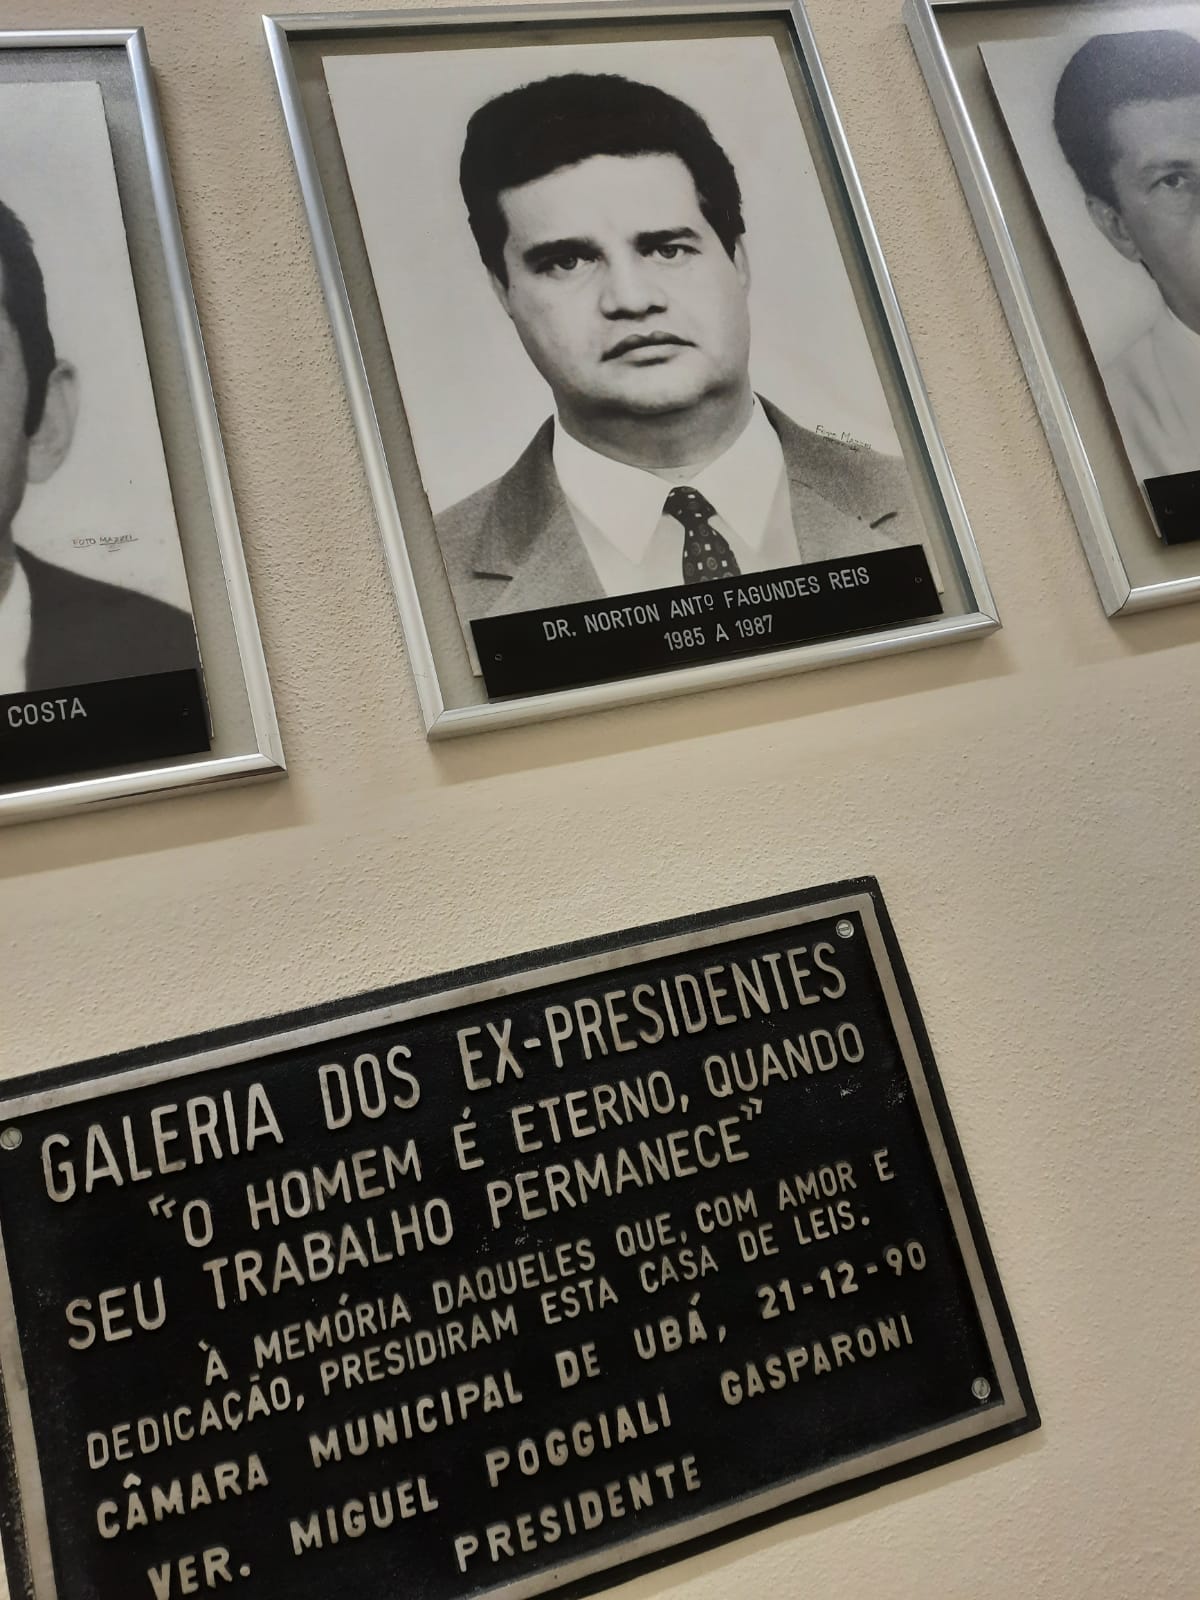 Poder Legislativo presta homenagem póstuma ao seu ex-presidente, Norton Antônio Fagundes Reis